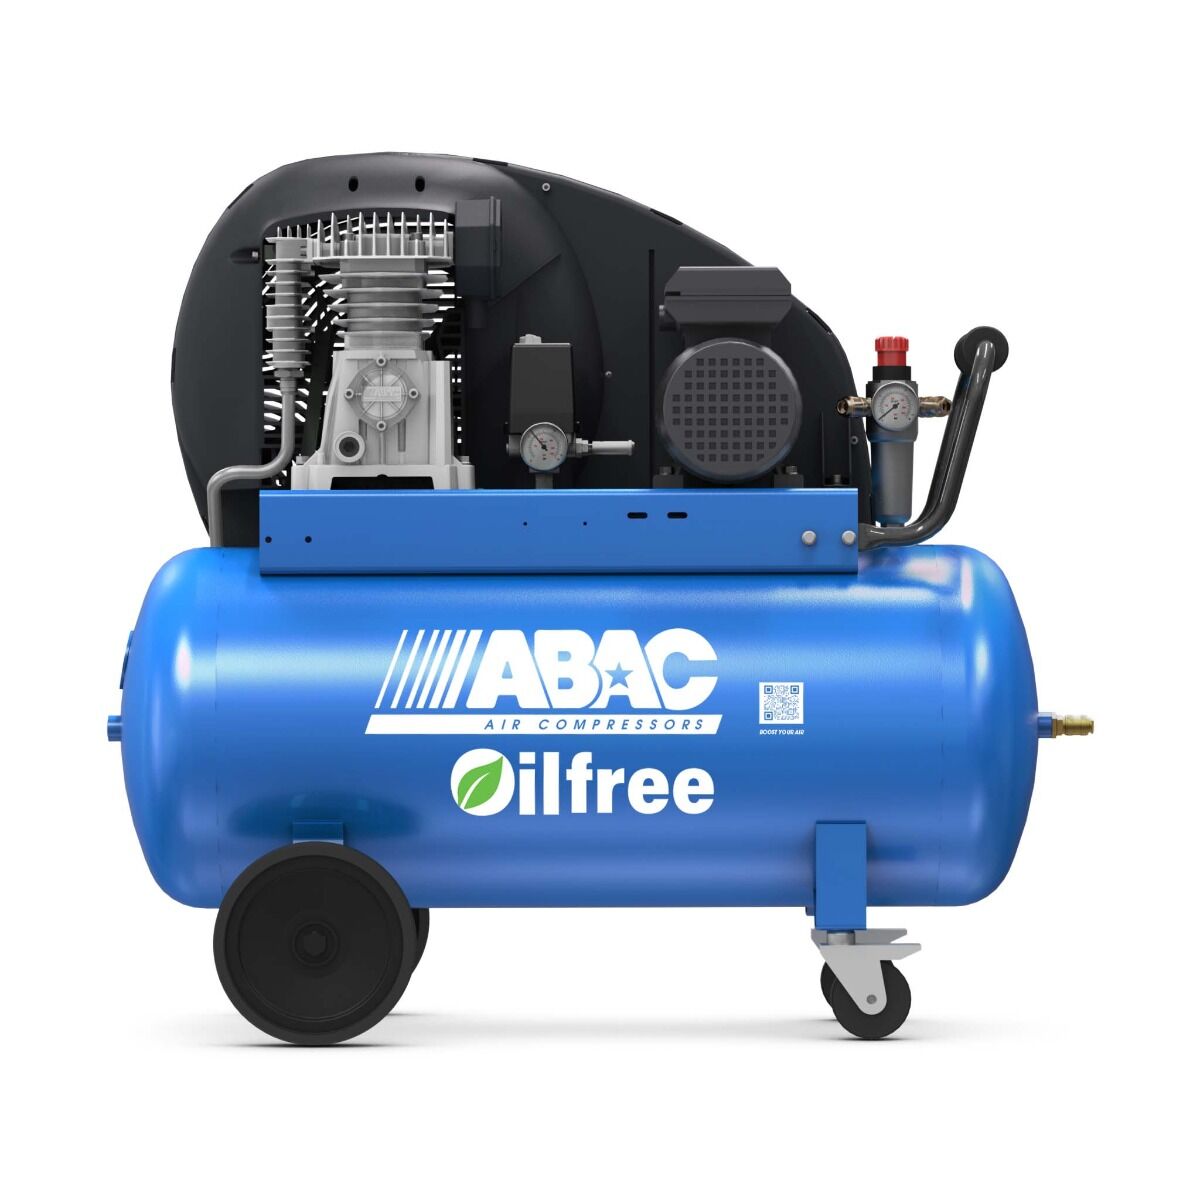 ABAC PRO A29B-0 100 CM2 compresseur sans huile 2HP 100L (230V)